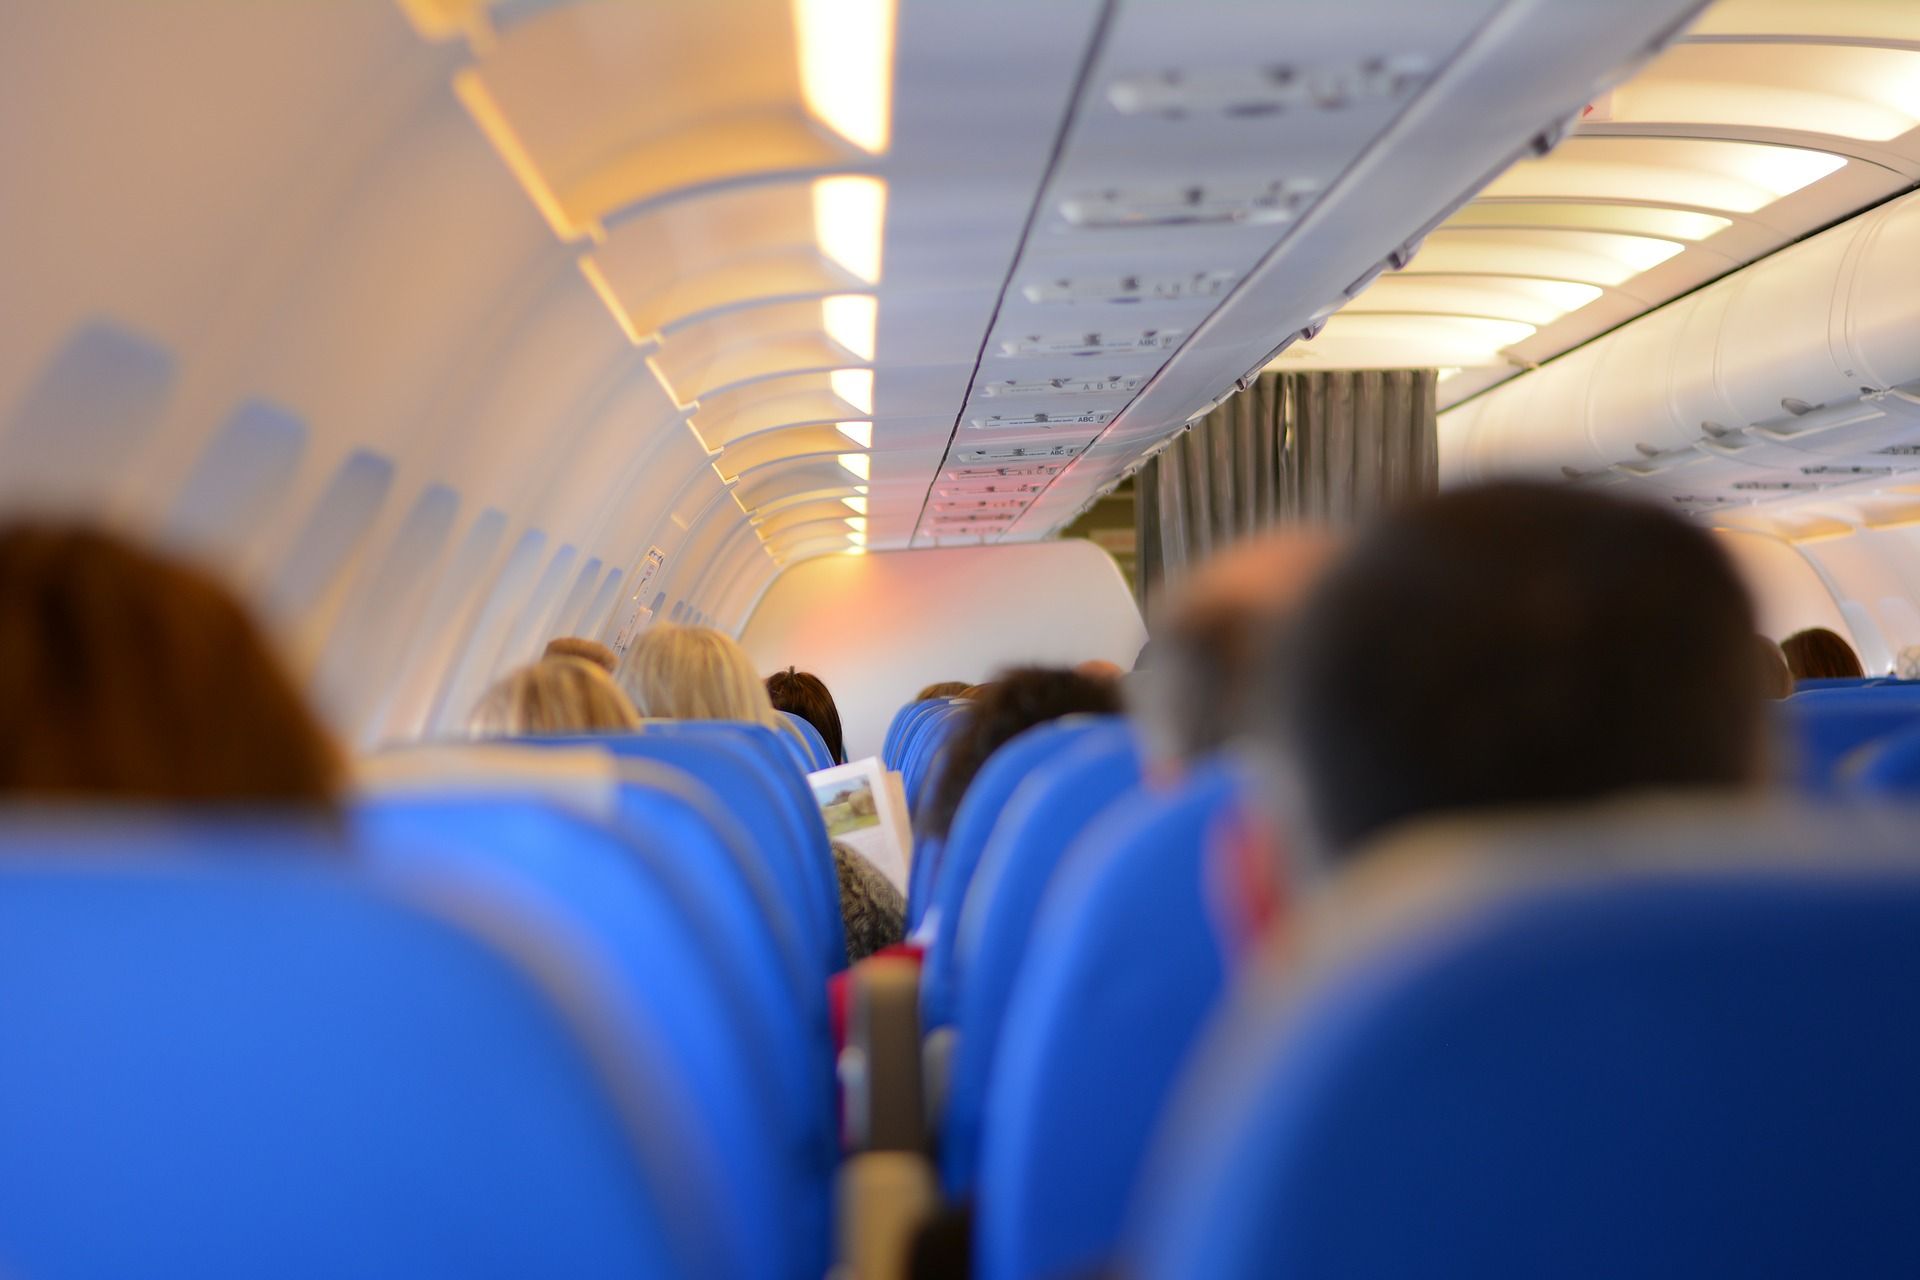 Le 10 cose più strane dimenticate in aereo